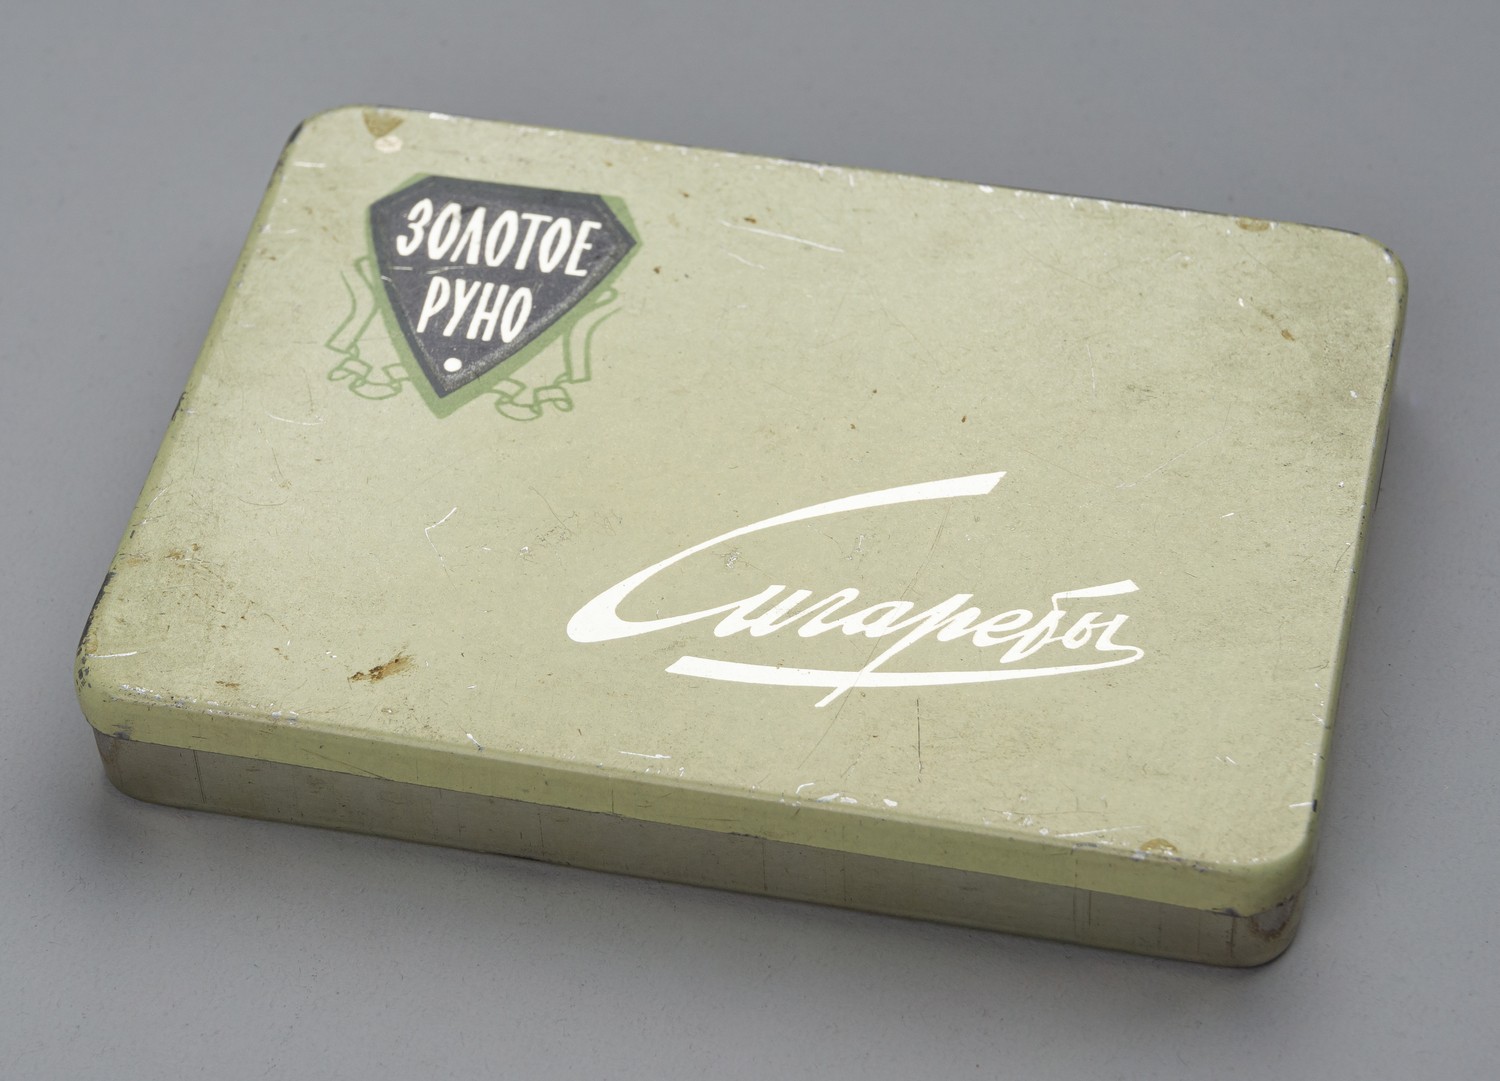 Пачка от сигарет «Золотое руно». СССР, конец 1960-х - 1970-е годы.